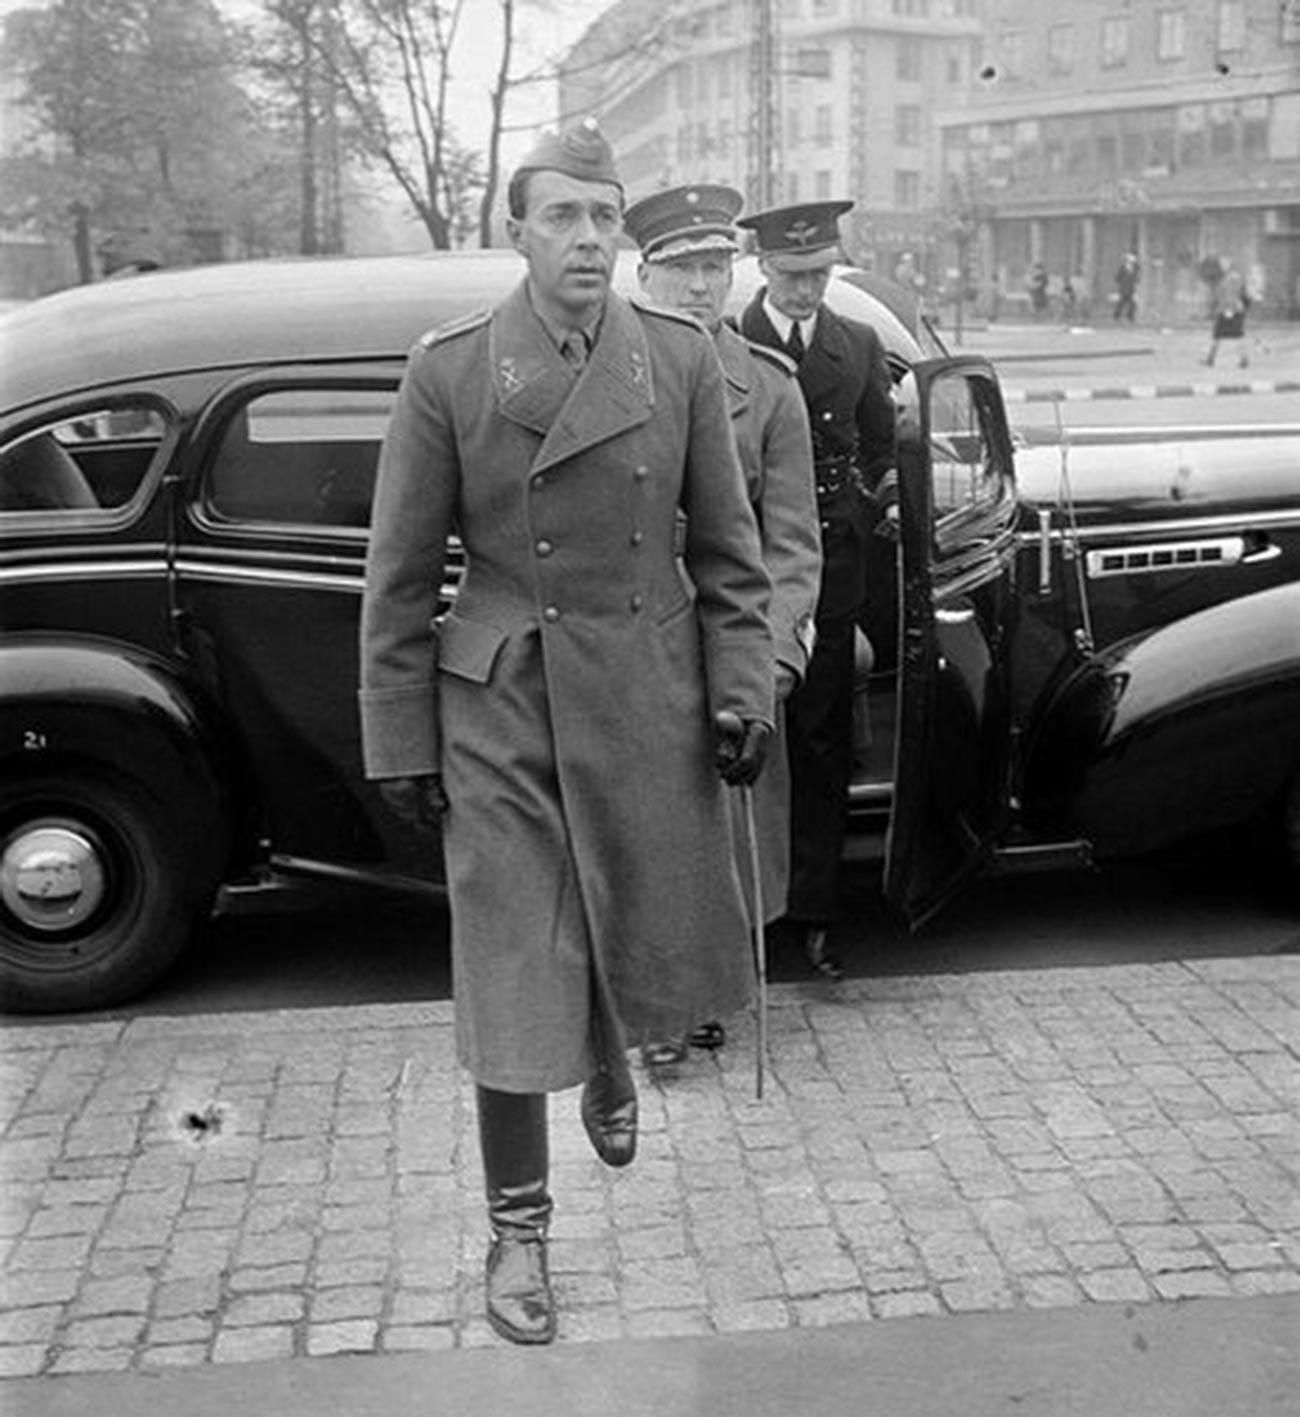 Престолонаследник Шведске Густав Адолф посетио је изложбу војних трофеја у изложбеном салону током посете Финској 8. октобра 1941.